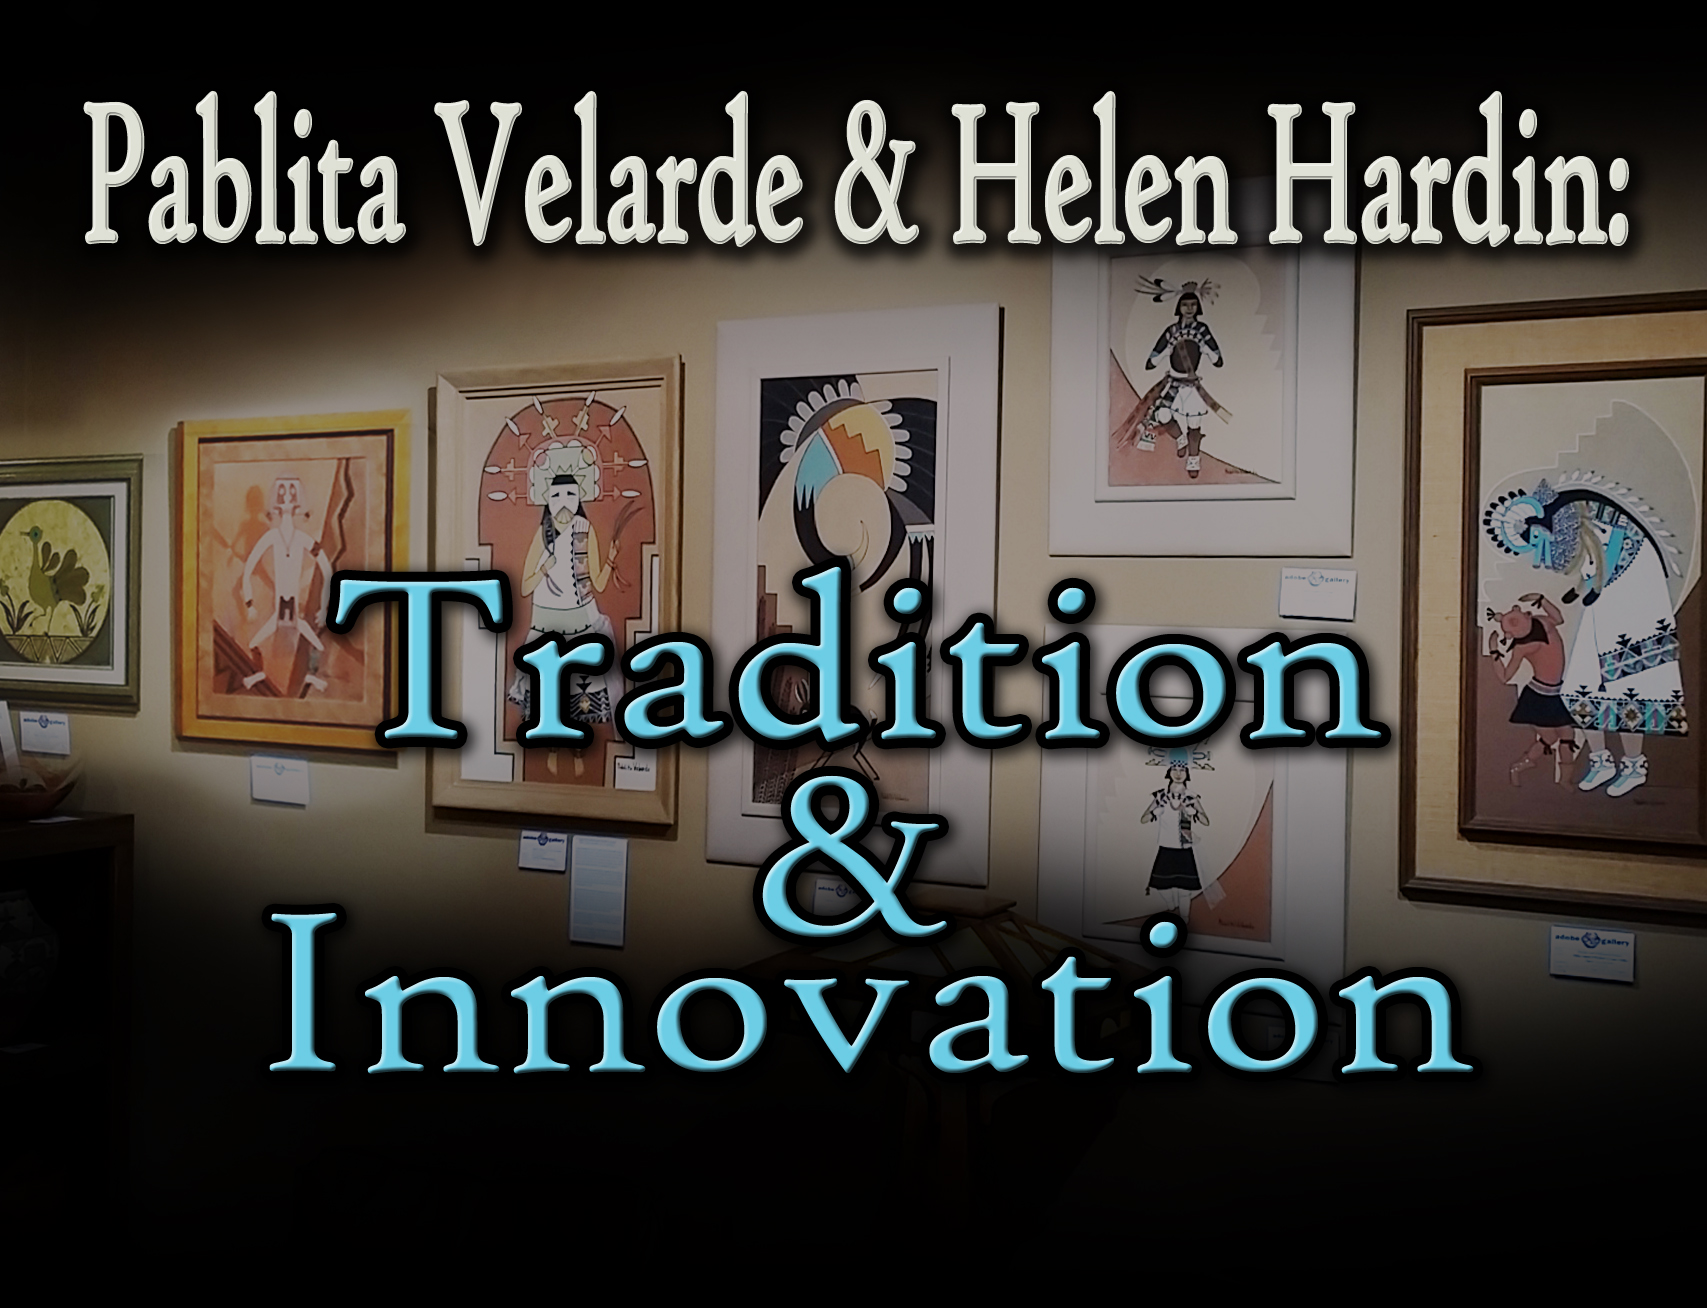 Pablita Velarde and Helen Harden Exhibit 2016